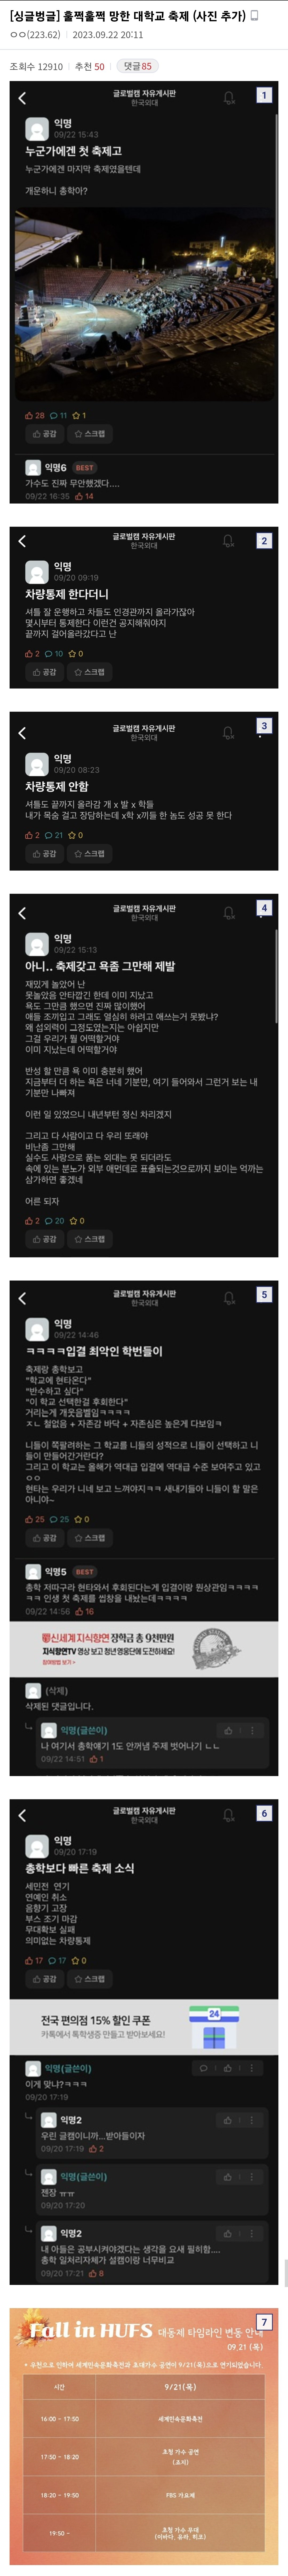 실시간 논란중인 외대 용인캠 축제...jpg